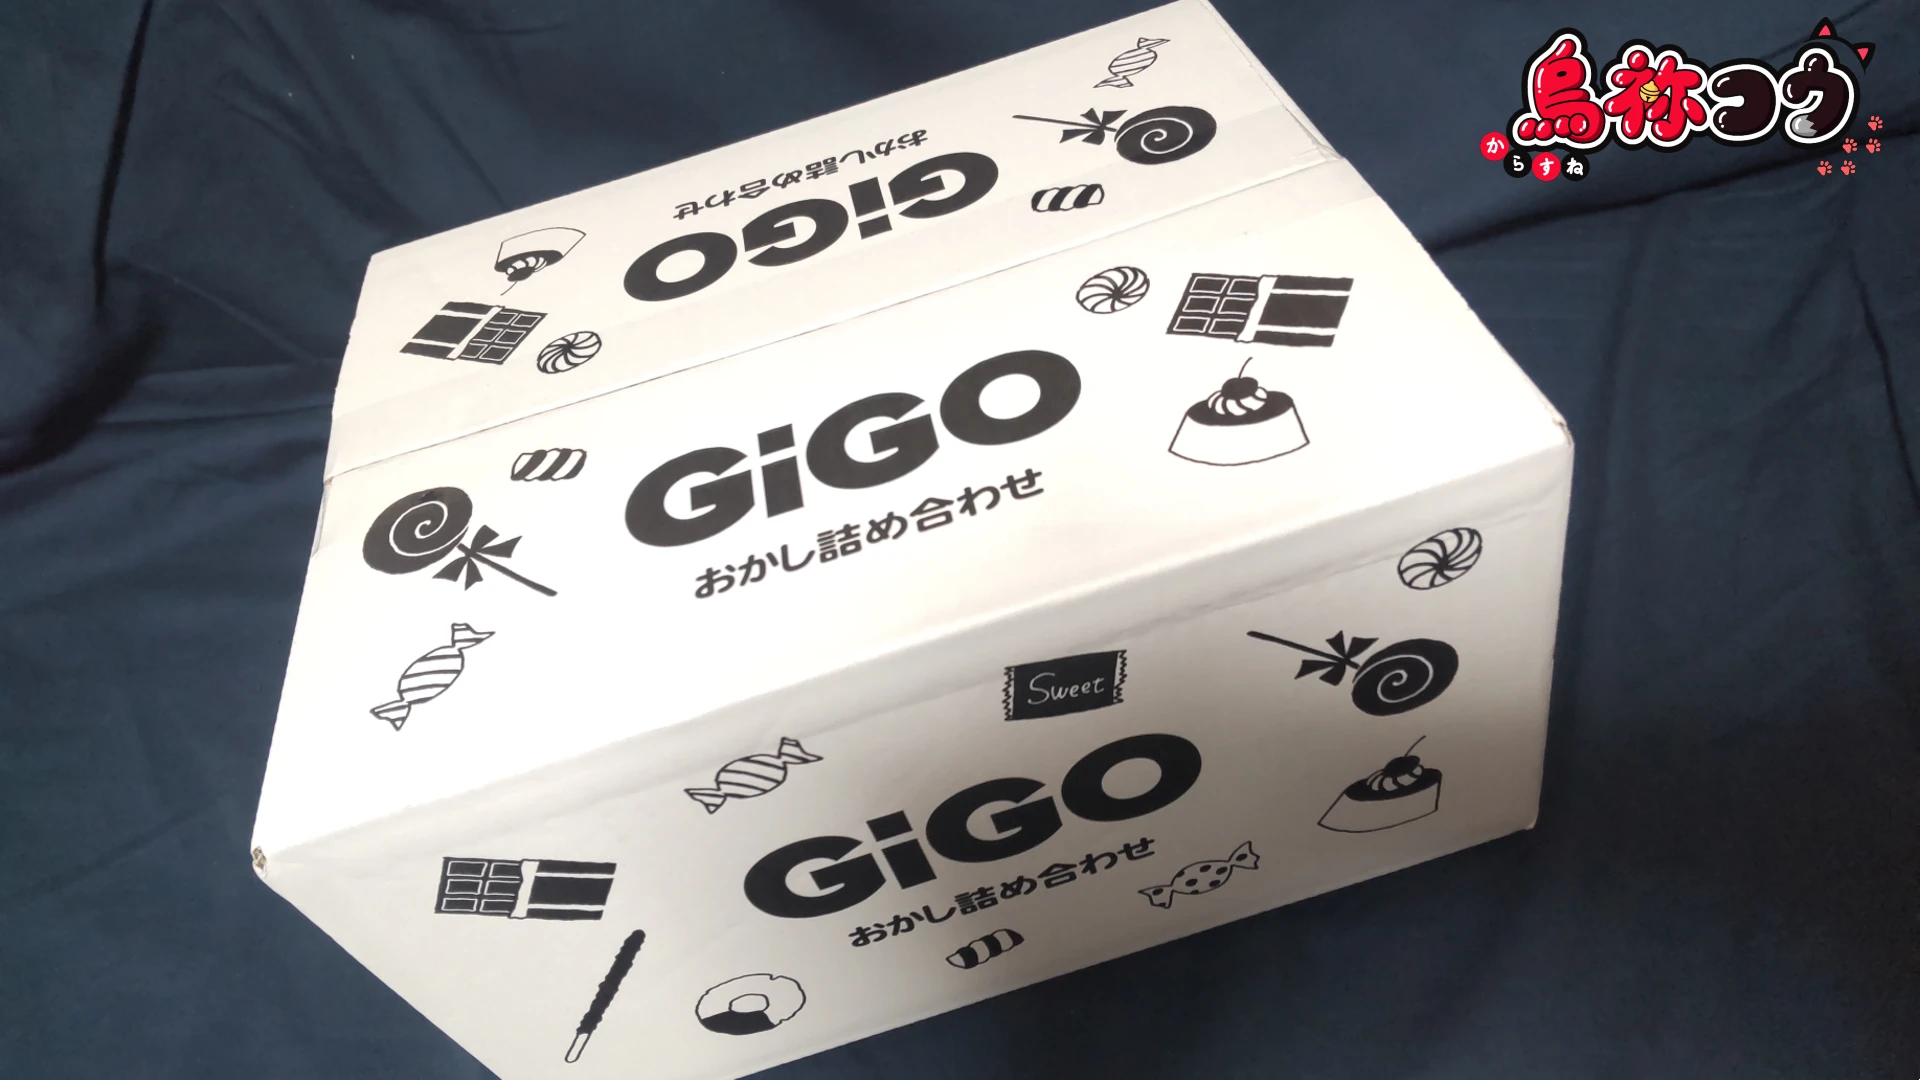 GiGO 限定おかし詰め合わせ BOX です